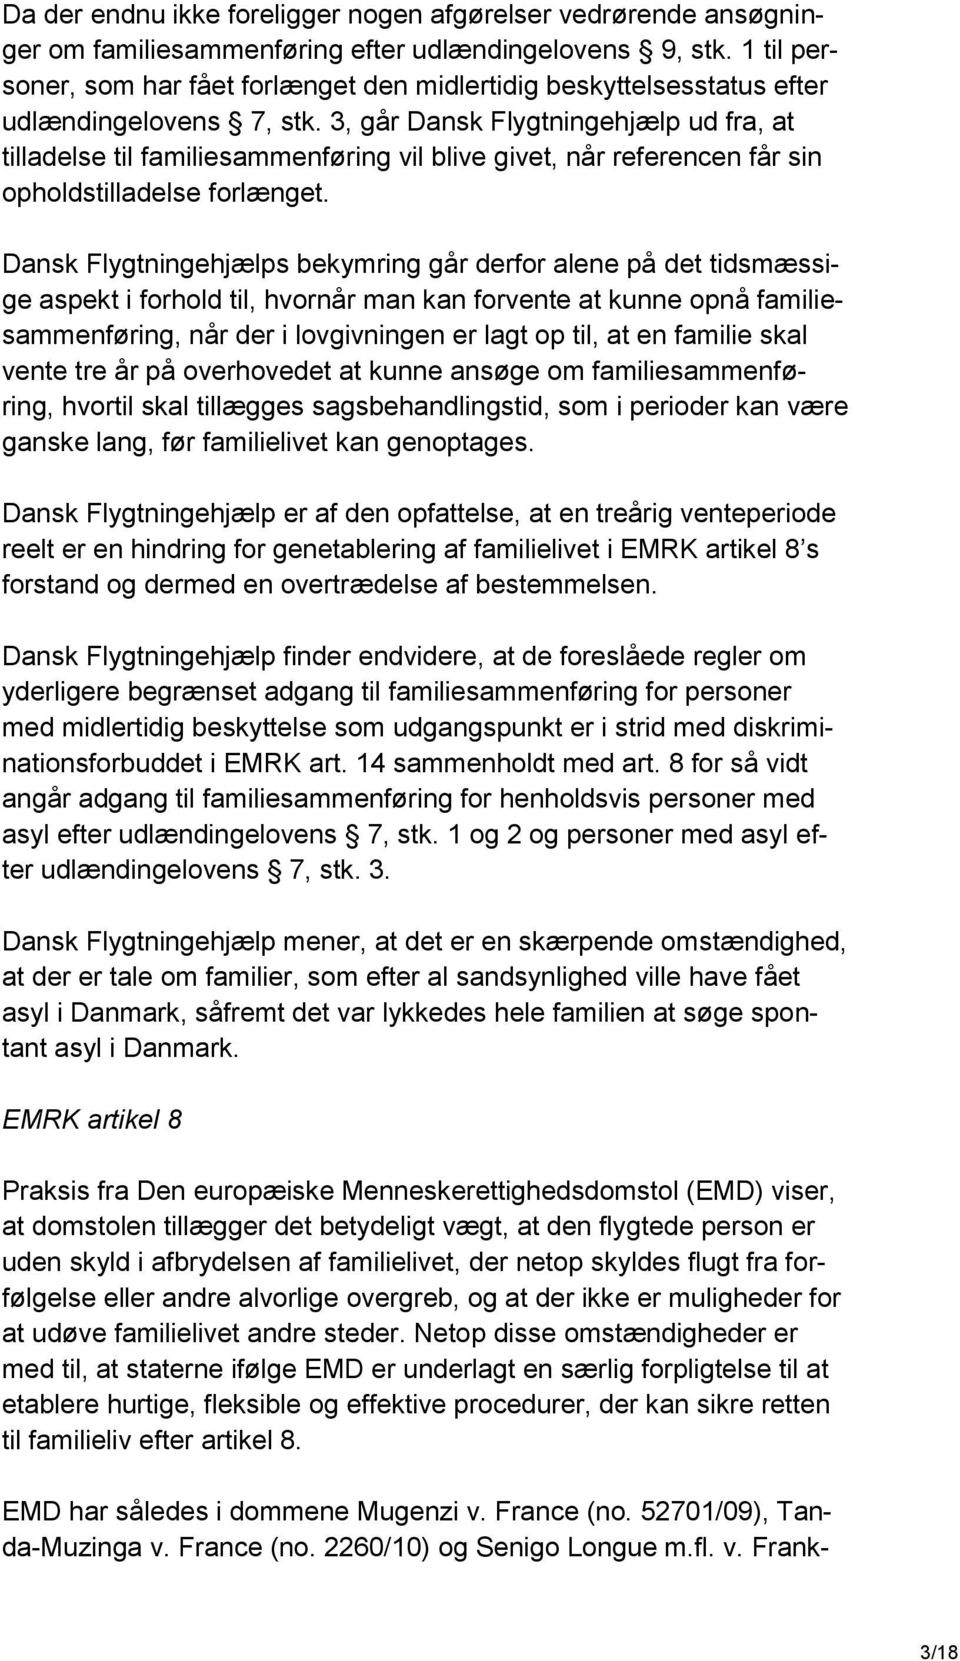 3, går Dansk Flygtningehjælp ud fra, at tilladelse til familiesammenføring vil blive givet, når referencen får sin opholdstilladelse forlænget.